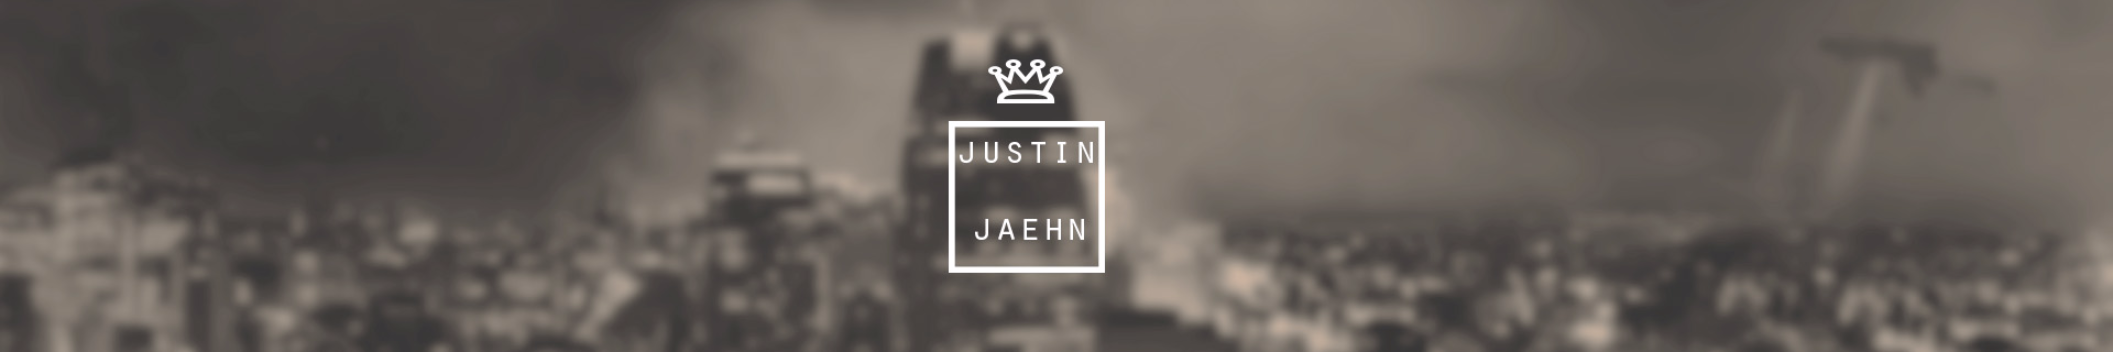 Justin Jaehn